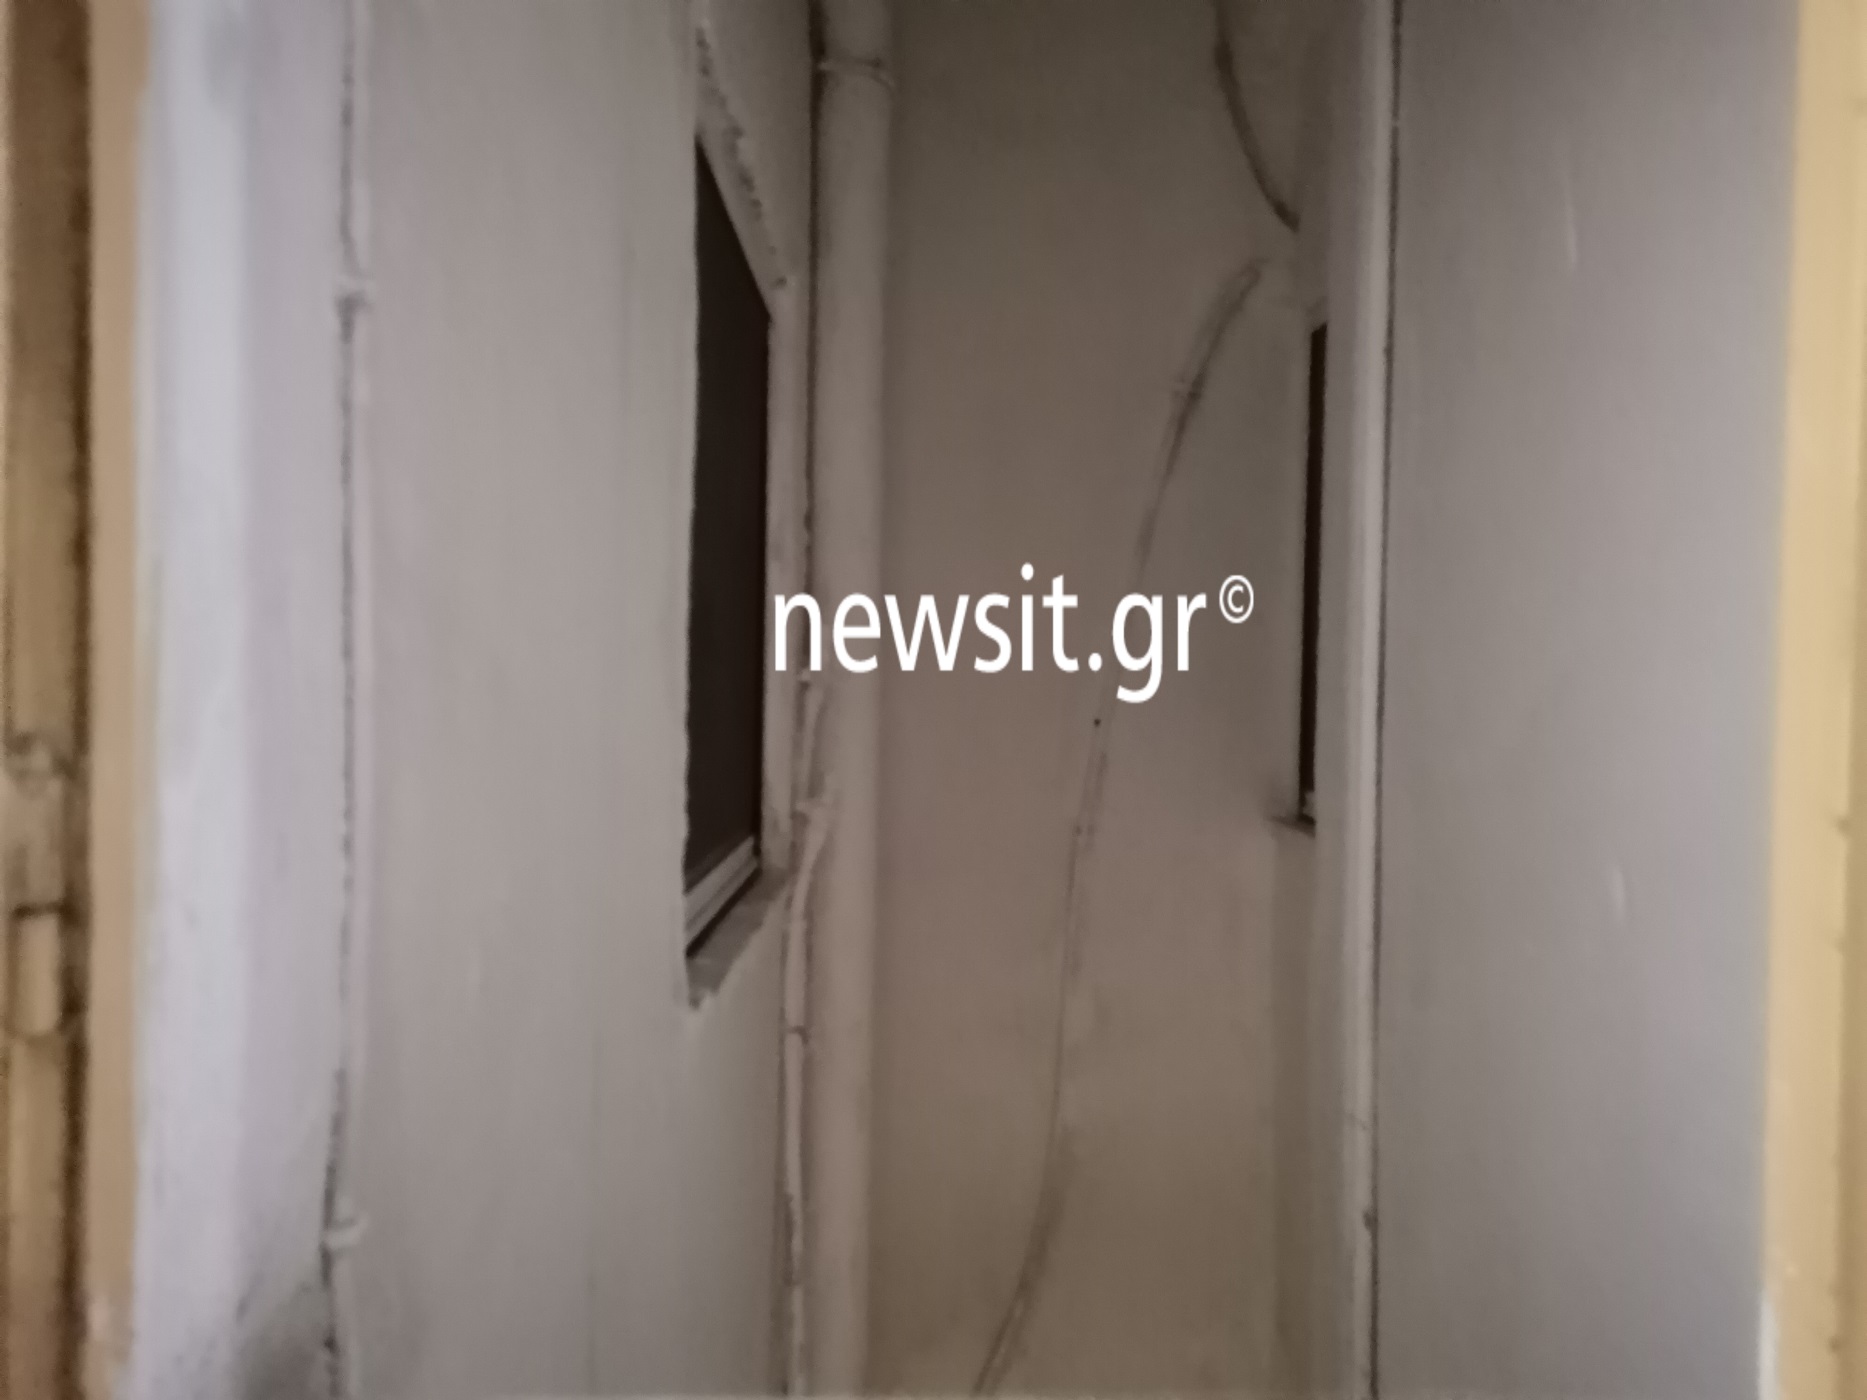 Ηλιούπολη: Άνδρας έπεσε σε φωταγωγό πολυκατοικίας